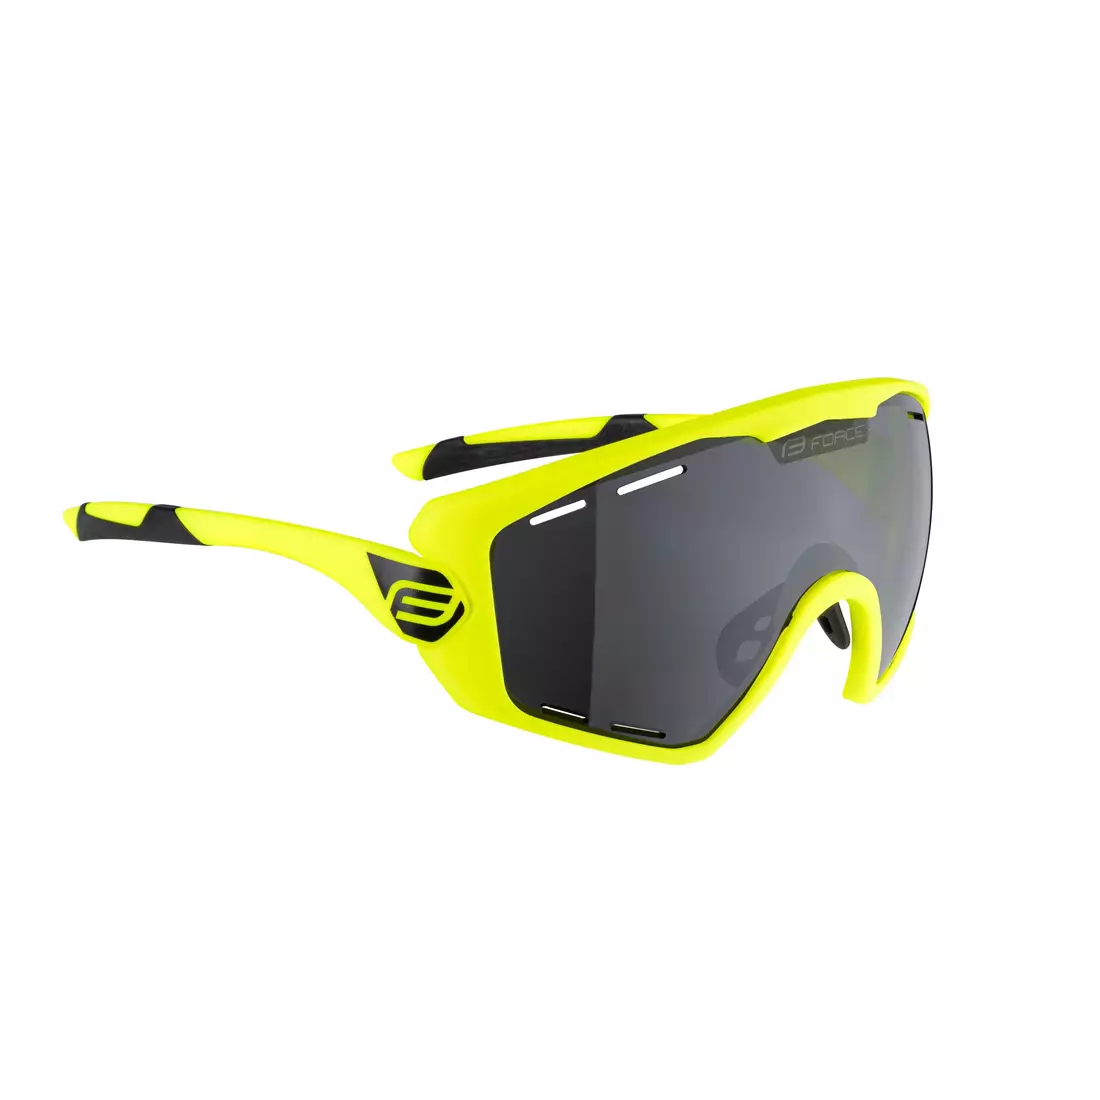 FORCE kerékpáros / sport szemüveg OMBRO PLUS fluo mat, 91121